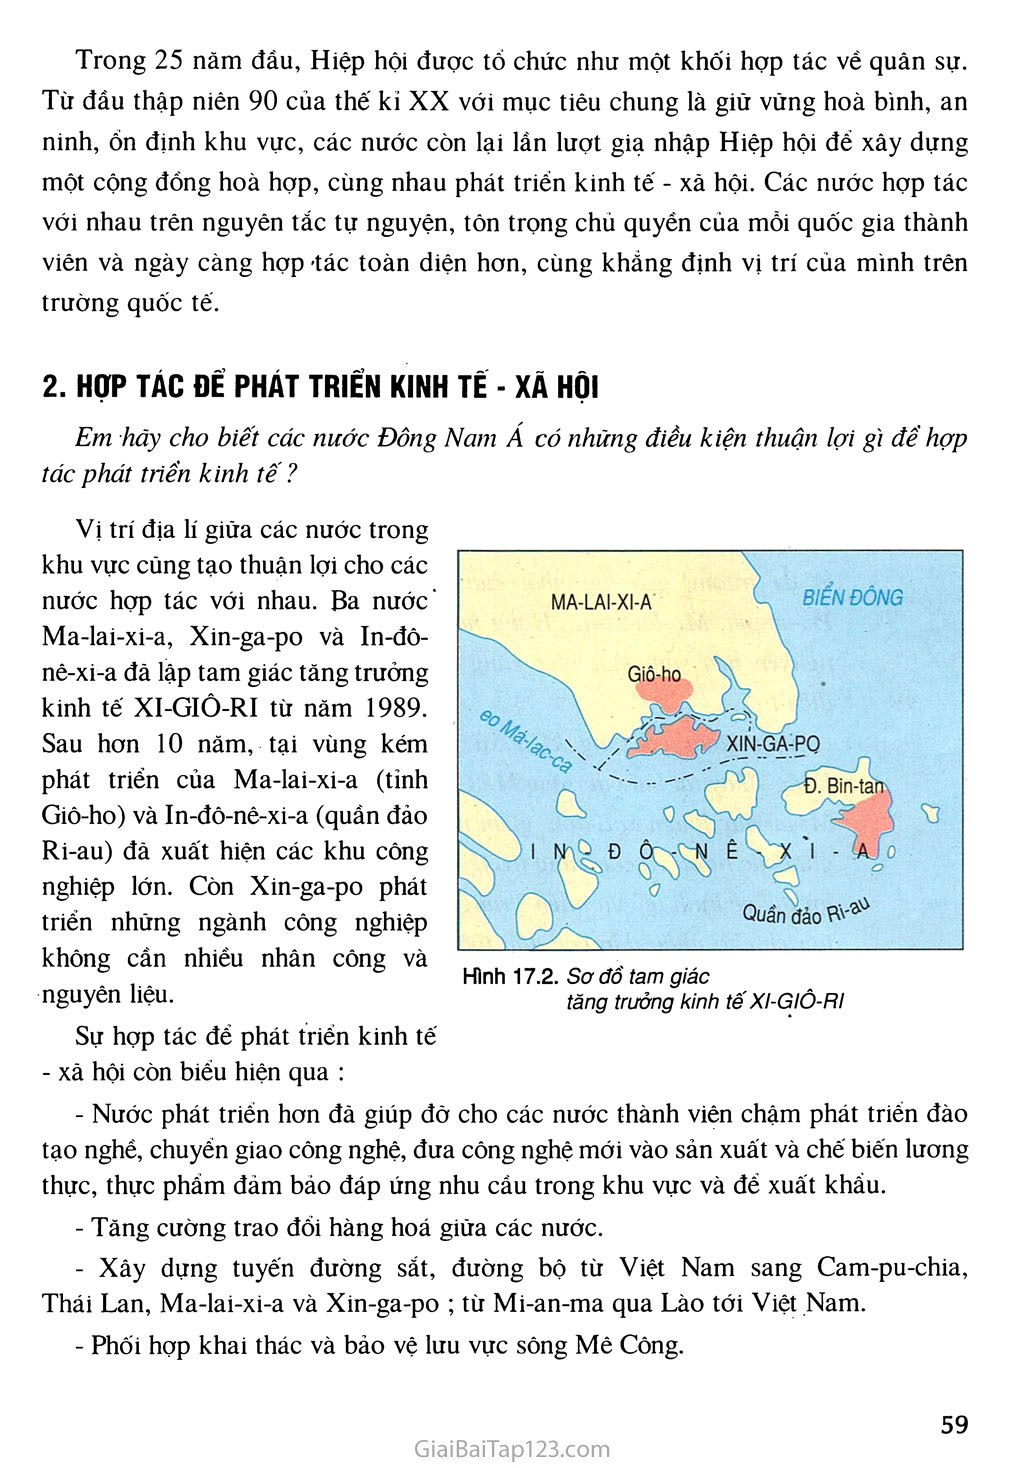 Bài 17. Hiệp hội các nước Đông Nam Á (ASEAN) trang 2